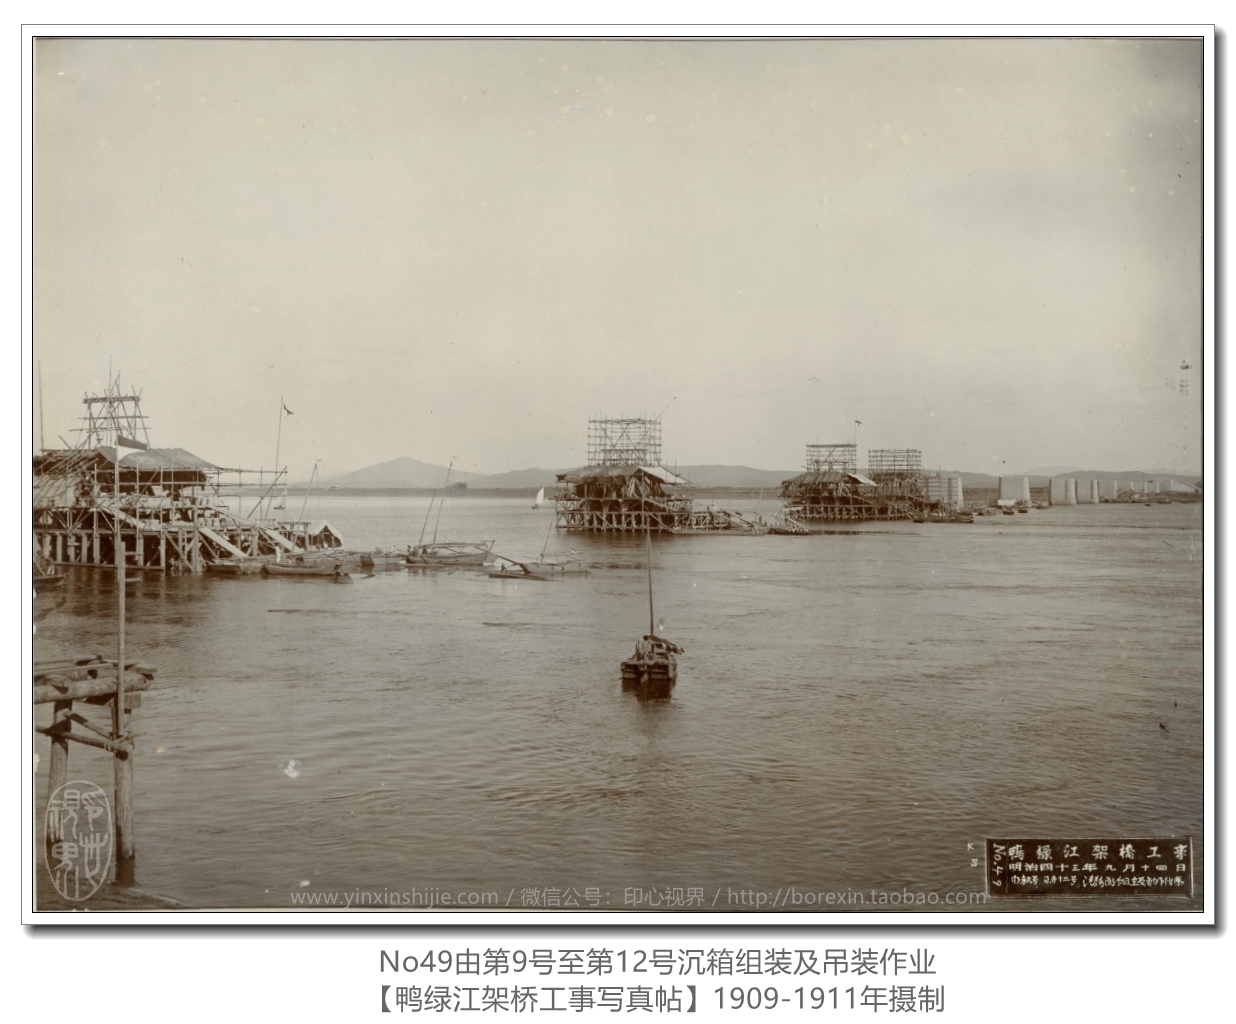 【万卷书】《鸭绿江架桥工事写真帖1911》No49由第9号至第12号沉箱组装及吊装作